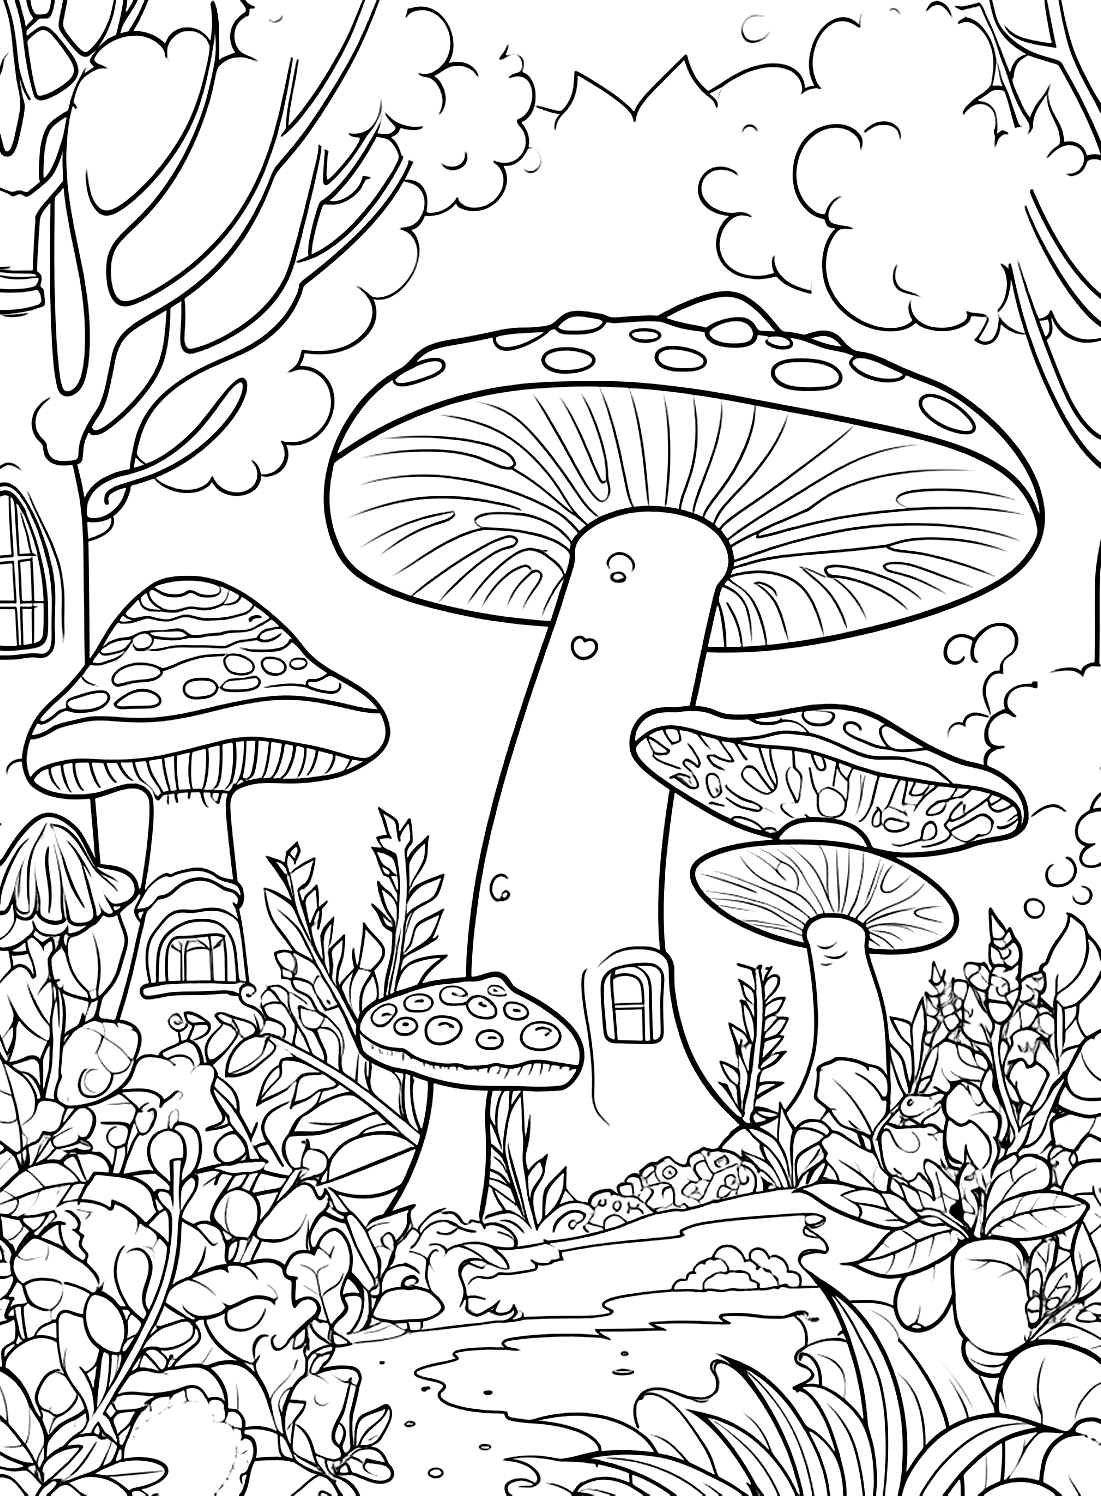 Страница Грибного леса из Mushroom